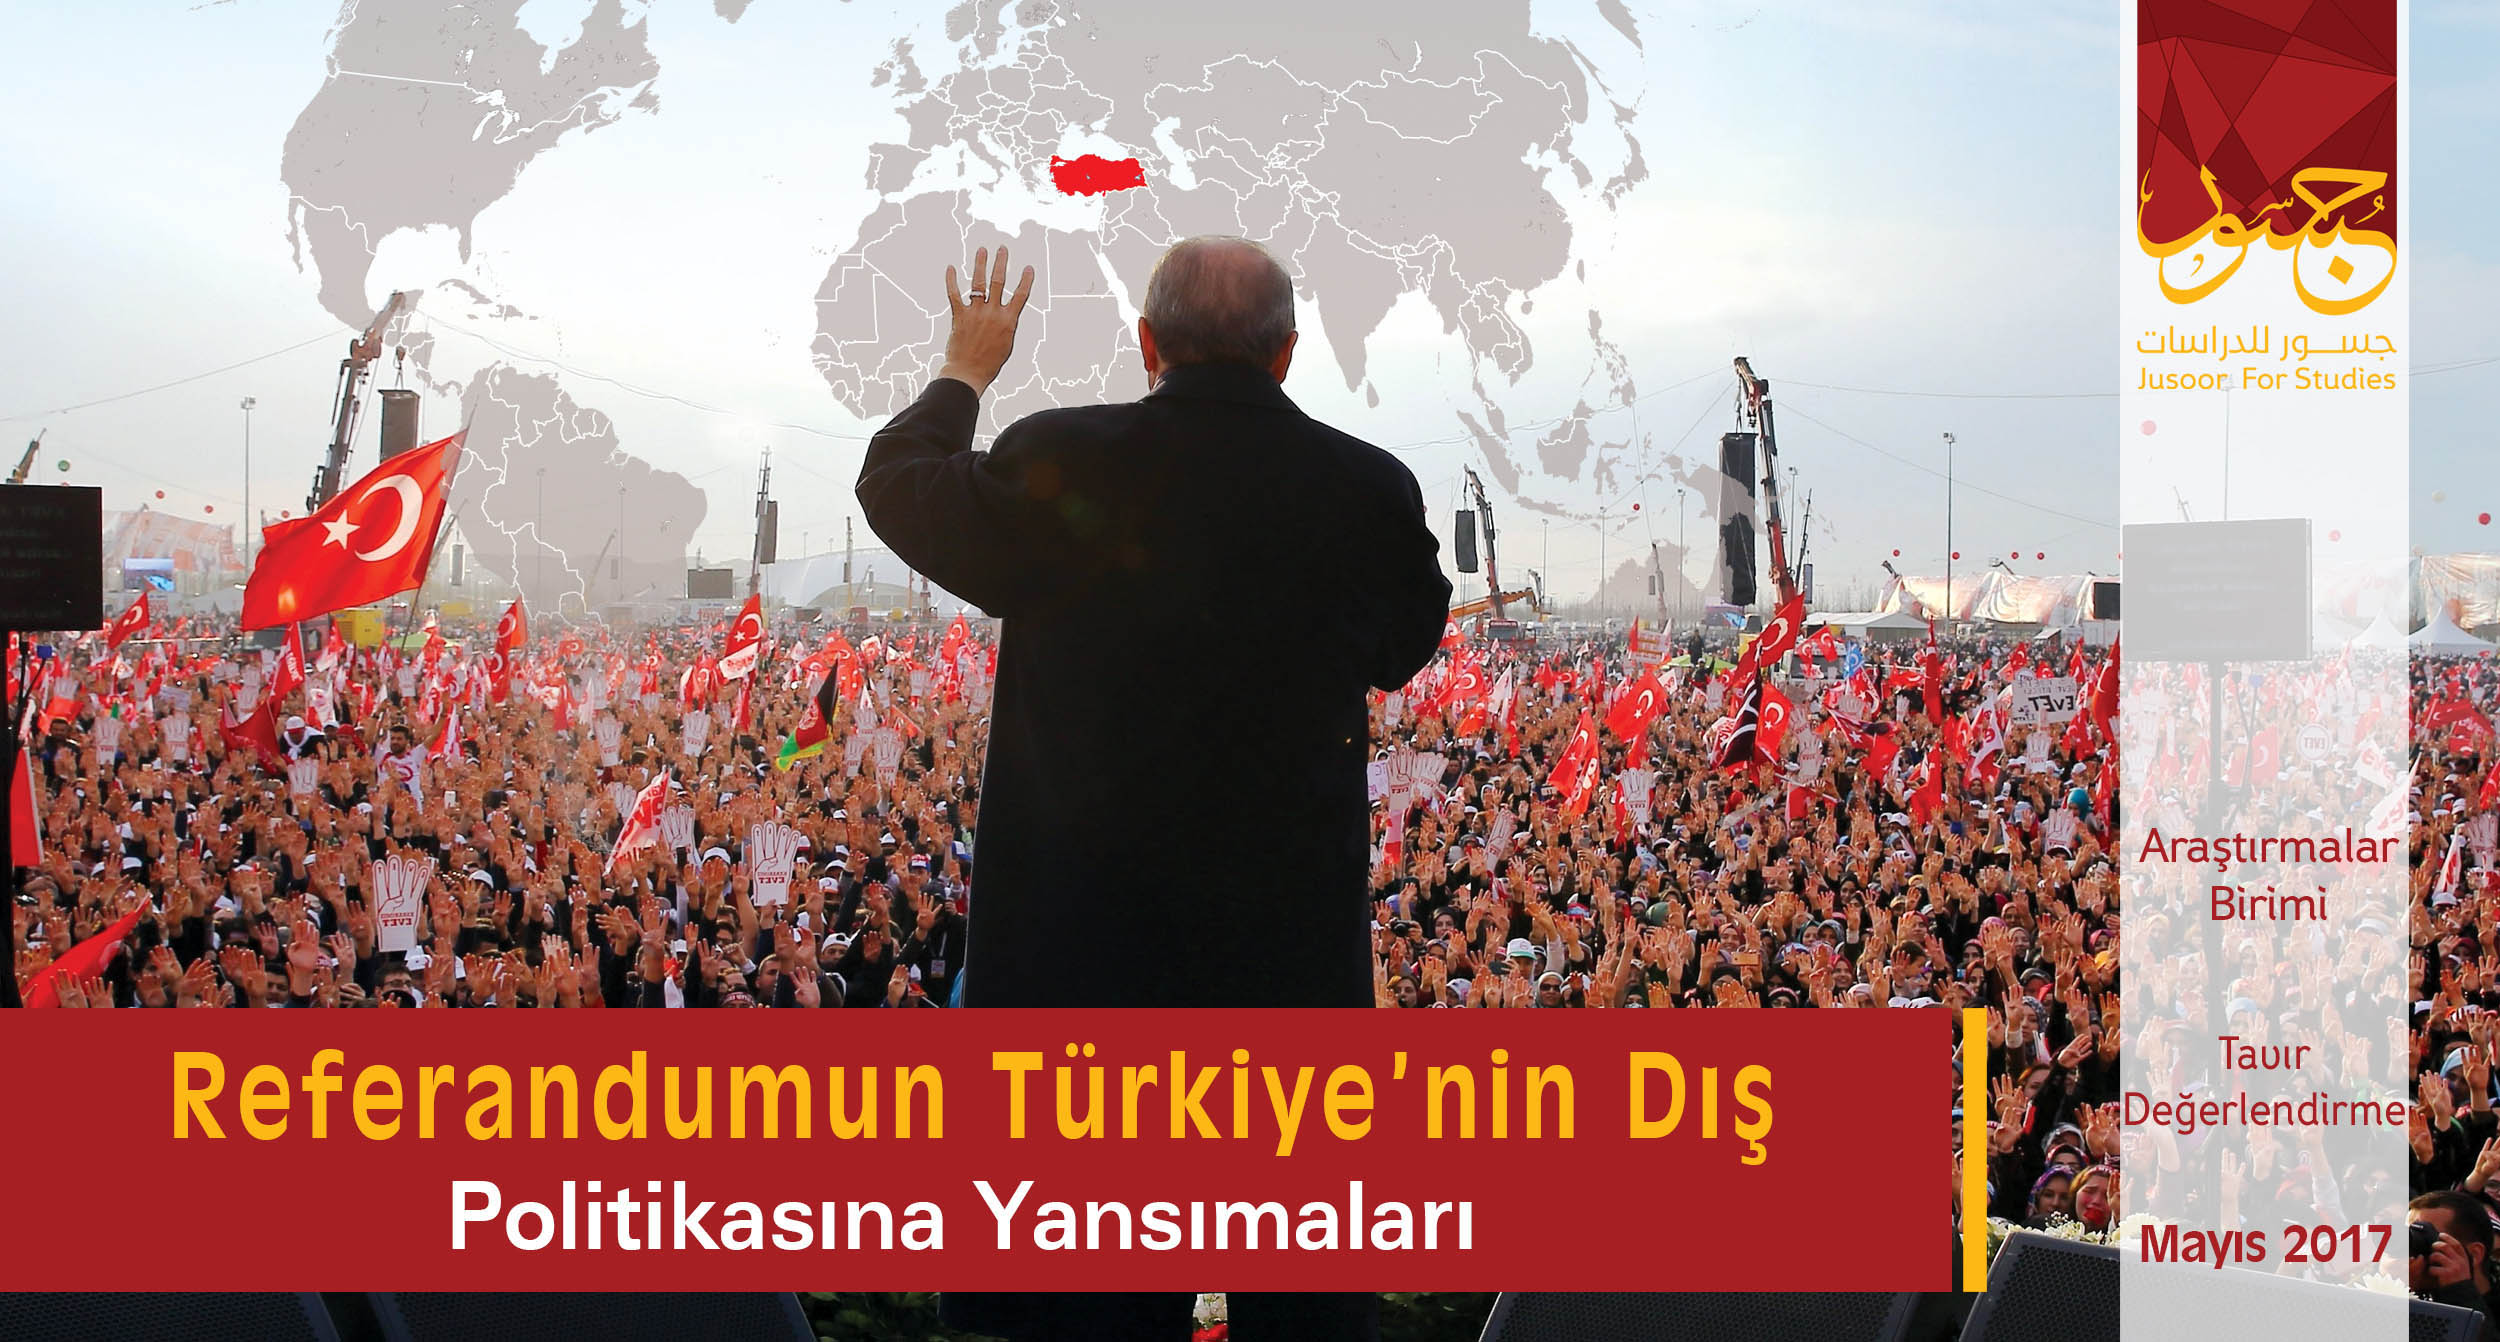 Referandumun Türkiye’nin dış politikasına yansımaları